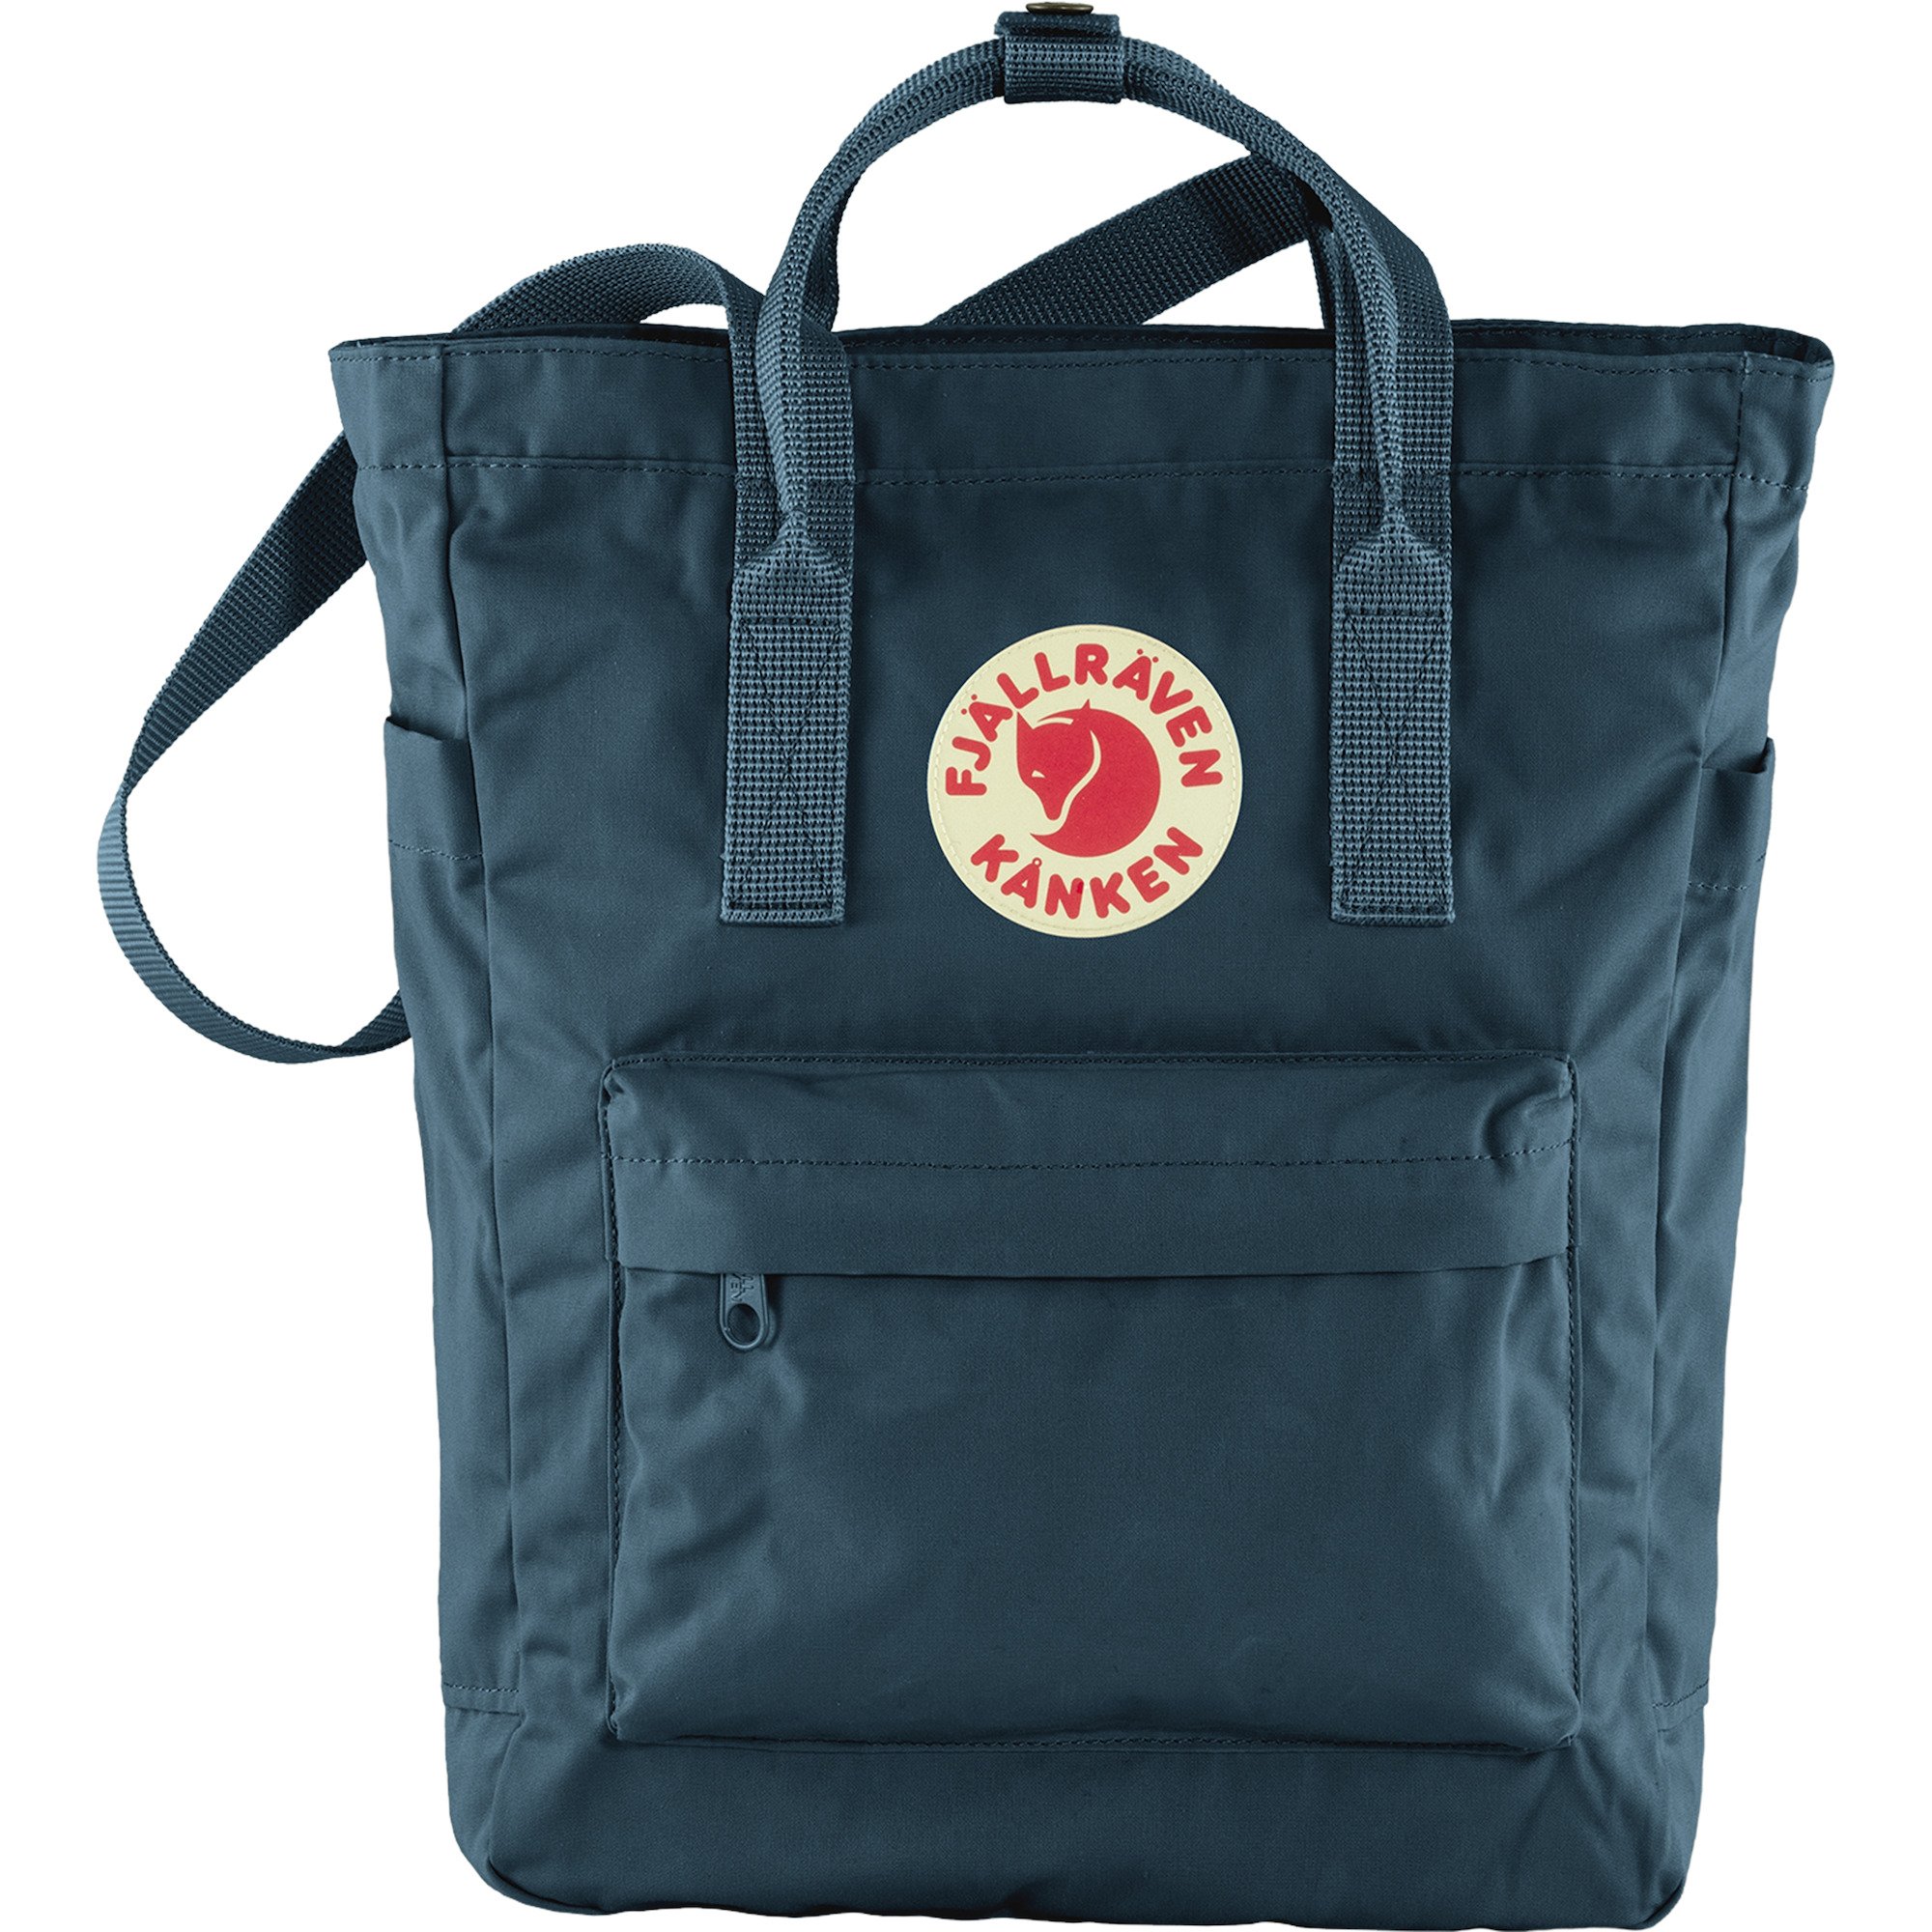 Fjallraven Kanken 7L 16L 20L backpack shoulder bag  Totepack retro leisure bag 